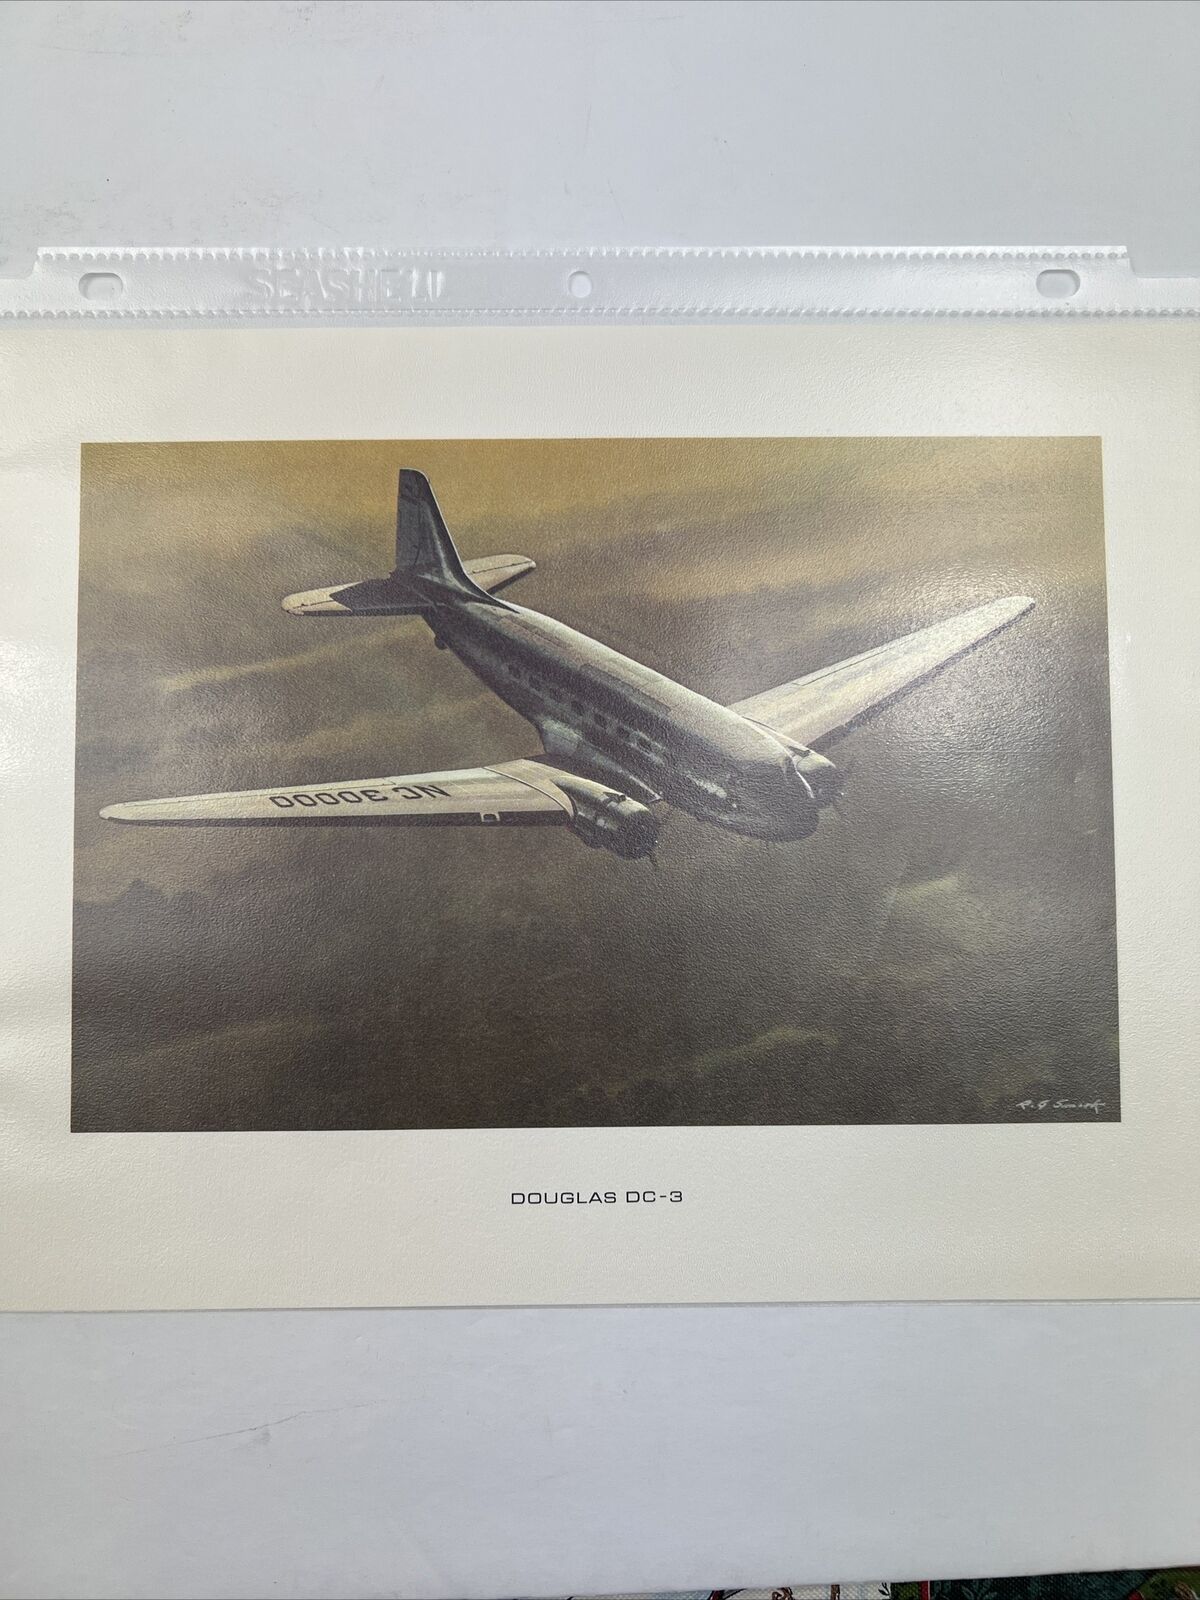 Douglas’s DC-9 11x8.5 Picture/Print. Description On Back